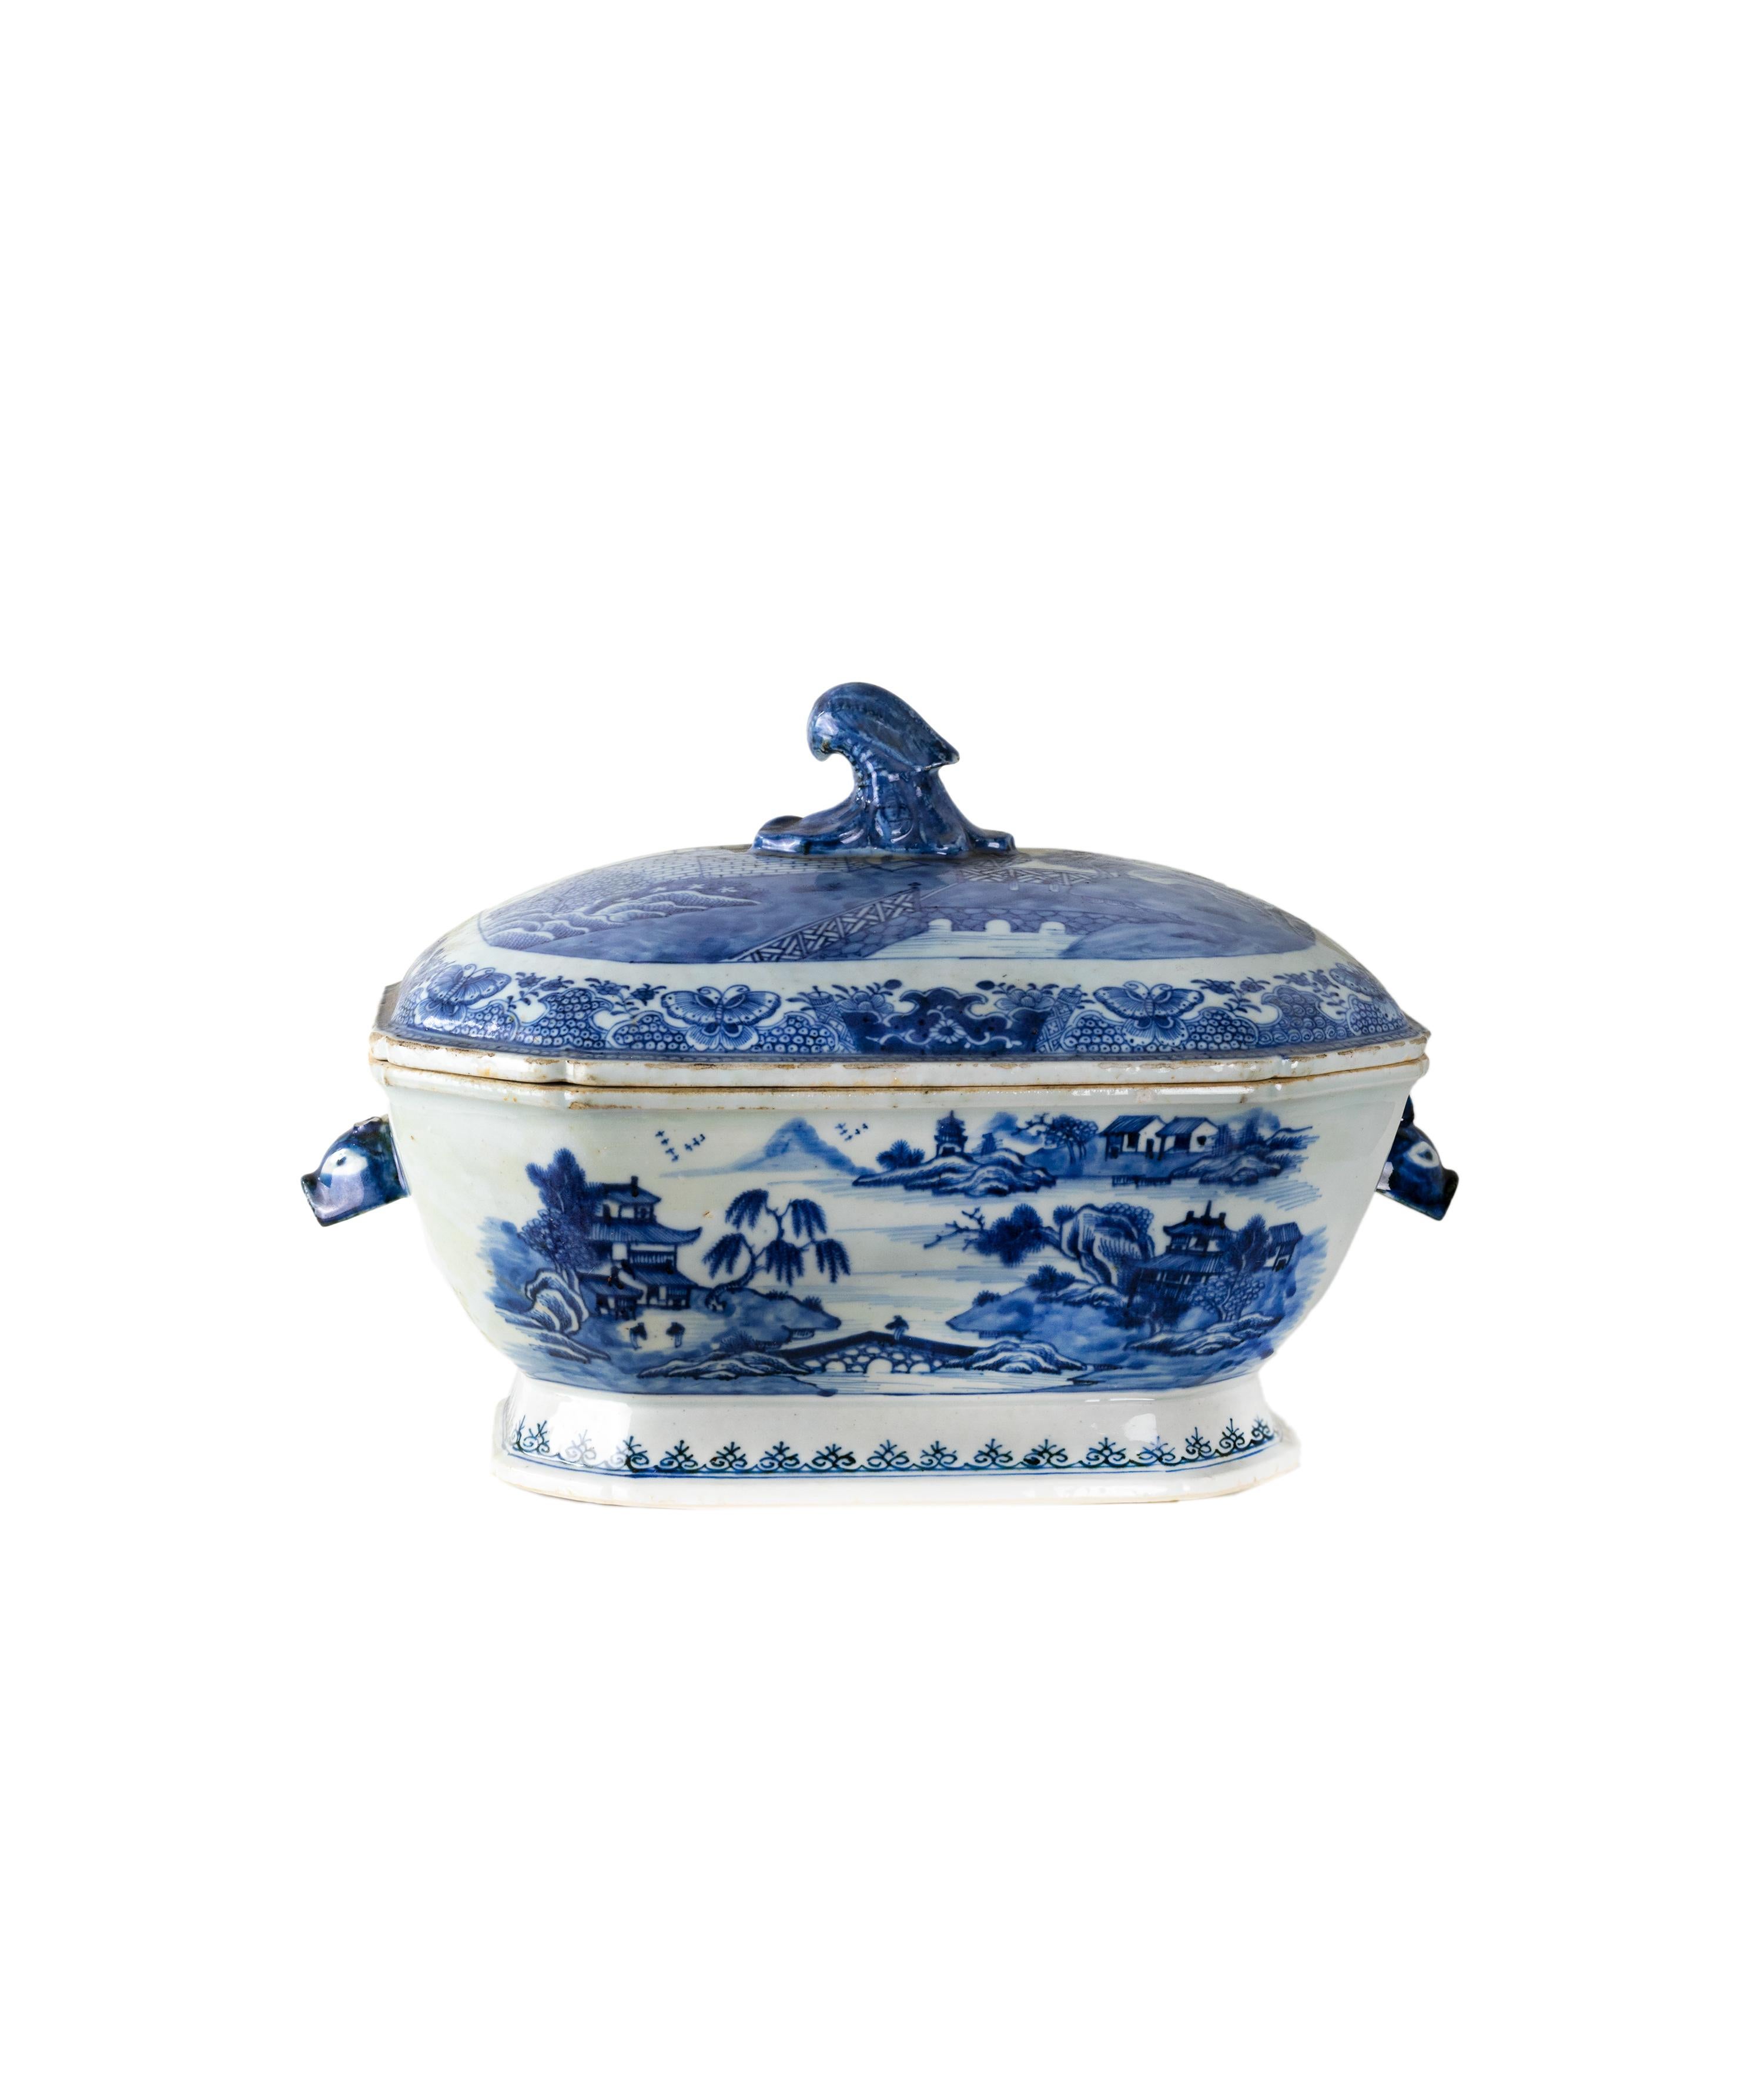 Chinesische Porzellan-Terrine, Qianlong (1736-1795), blaues Unterglasurdekor mit Pagodenmotiv, gewölbter Deckelgriff.
